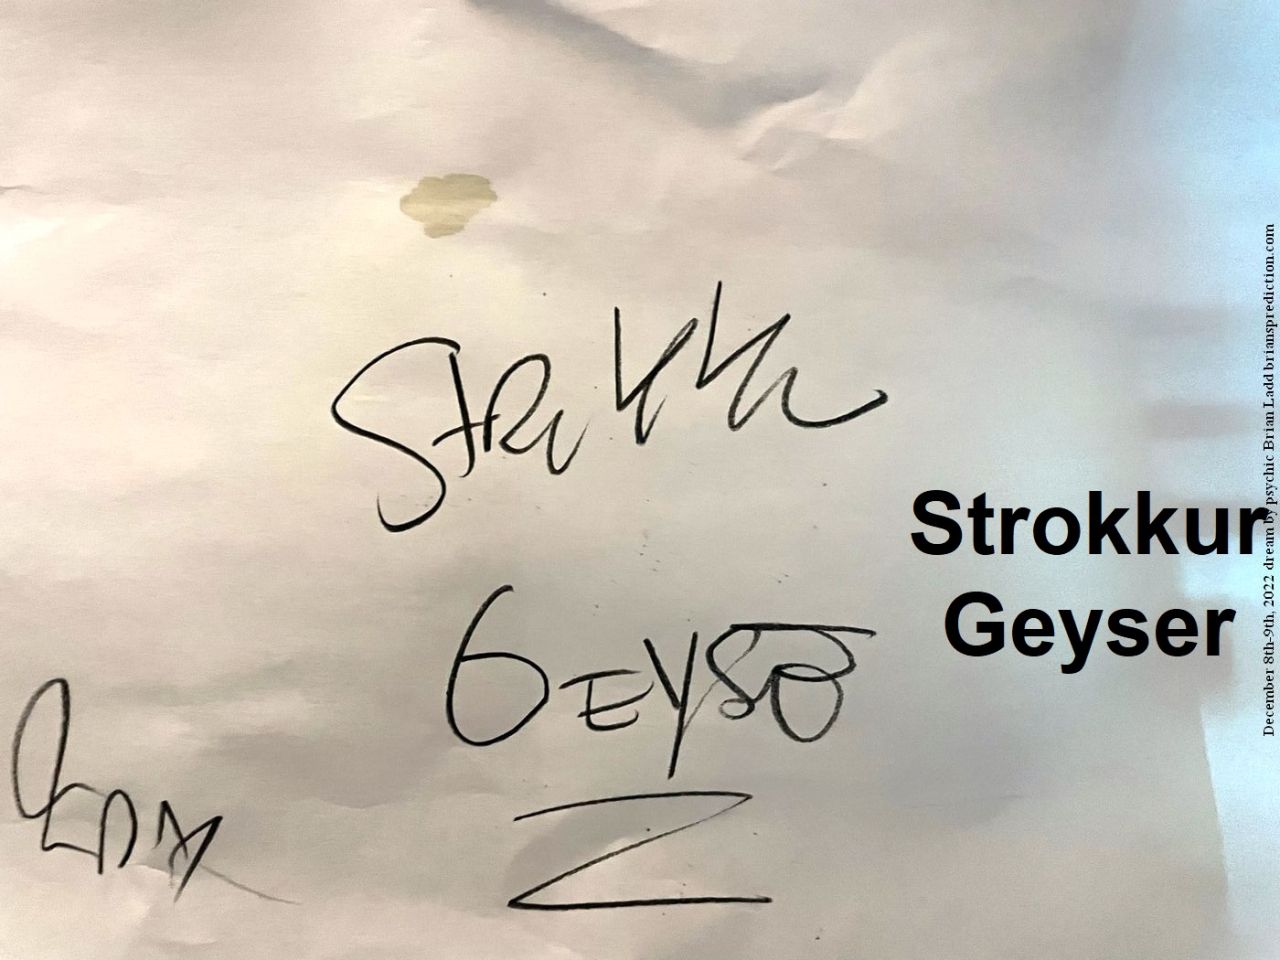 9 December 2022 1 Strokkur Geyser...
Strokkur Geyser.
